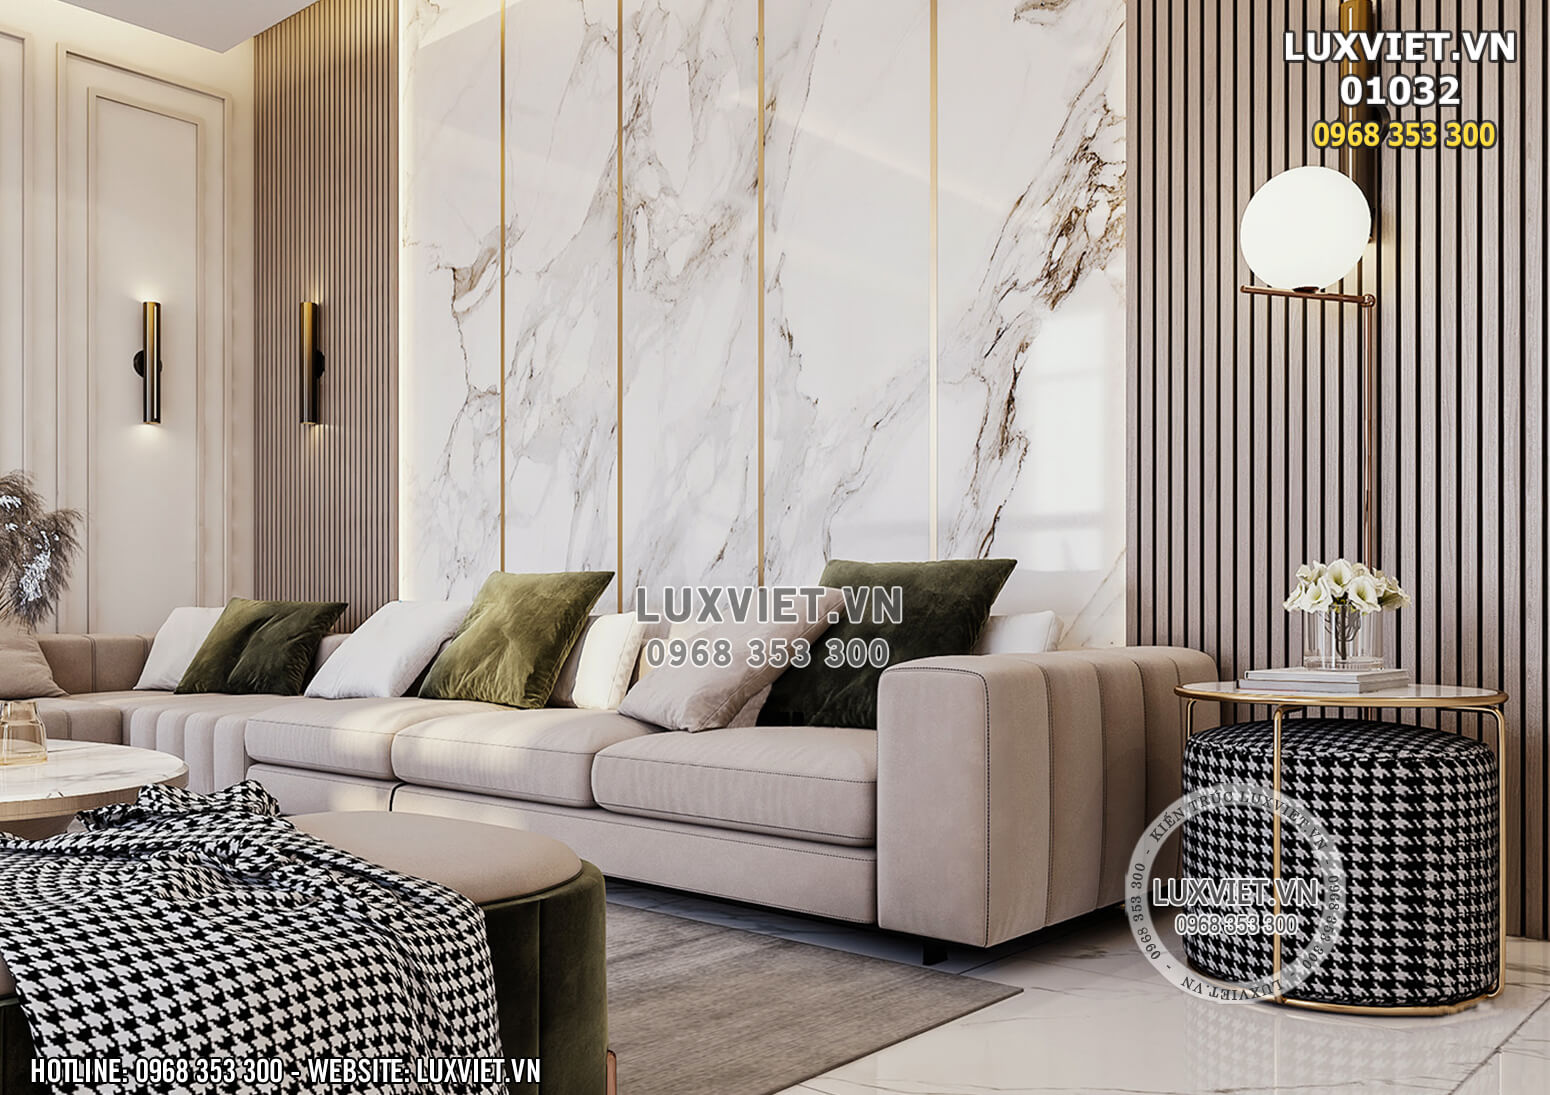 Hình ảnh: Thiết kế nội thất luxury cho khu vực sinh hoạt chung - LV 01032